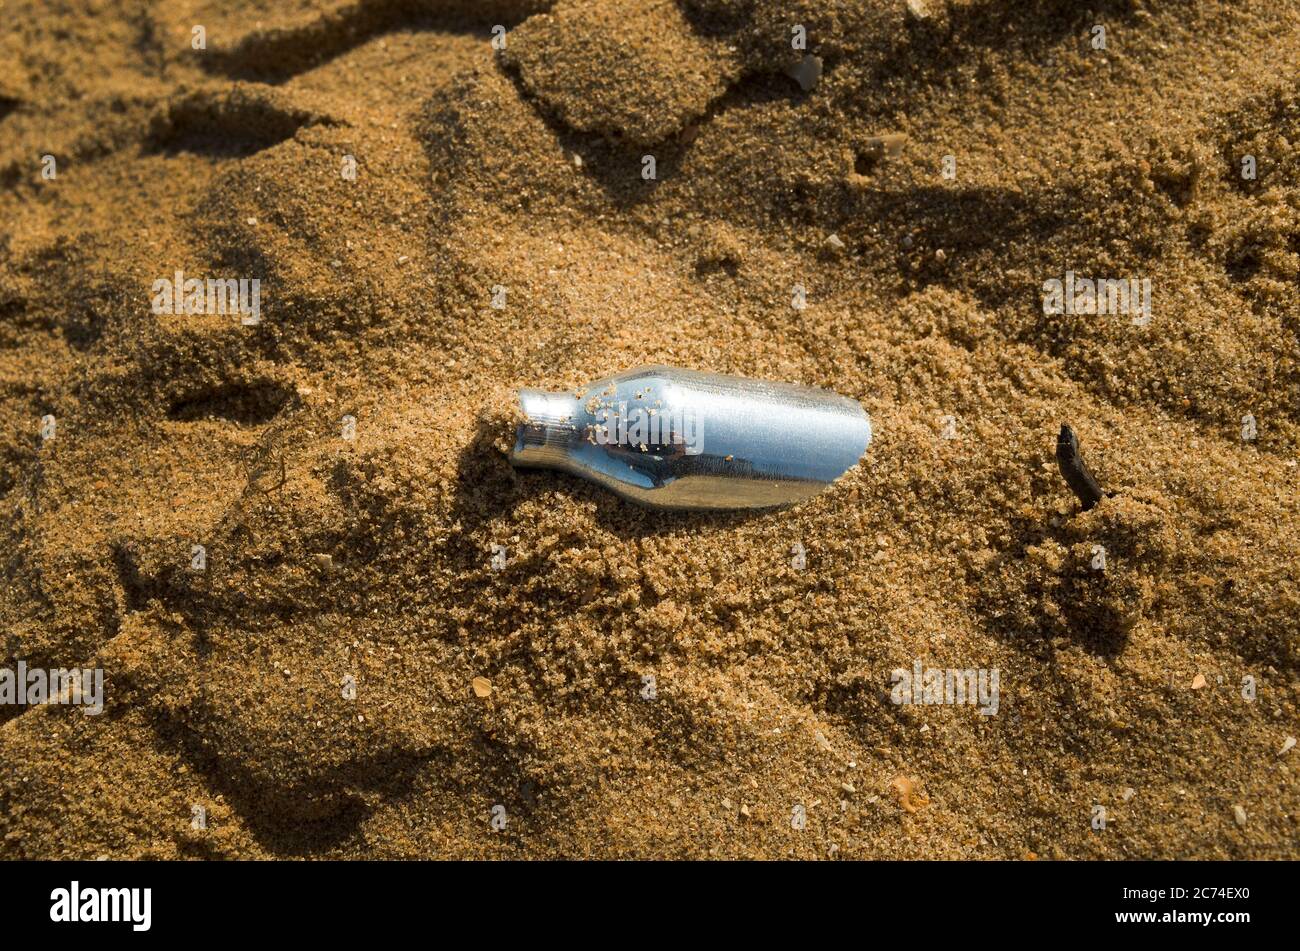 Un solo recipiente de óxido nitroso desechado en la arena de Margate Beach, Kent. Foto de stock